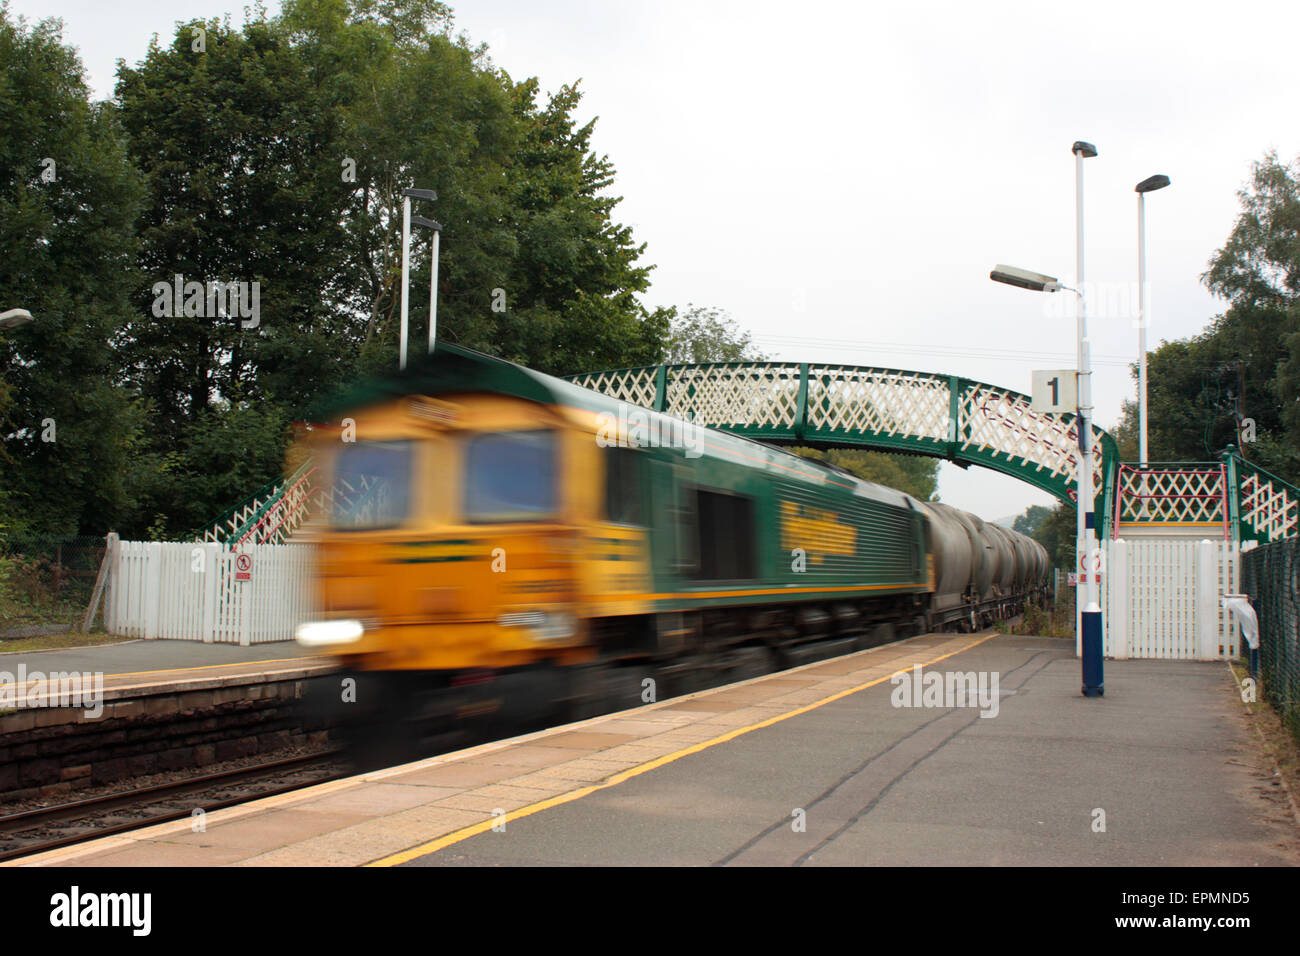 Train de fret fonctionne rapidement grâce à l'espoir, Derbyshire, Royaume-Uni. Vitesse d'obturation lente utilisée pour l'effet de flou. Transport ferroviaire et la logistique d'approvisionnement. Banque D'Images